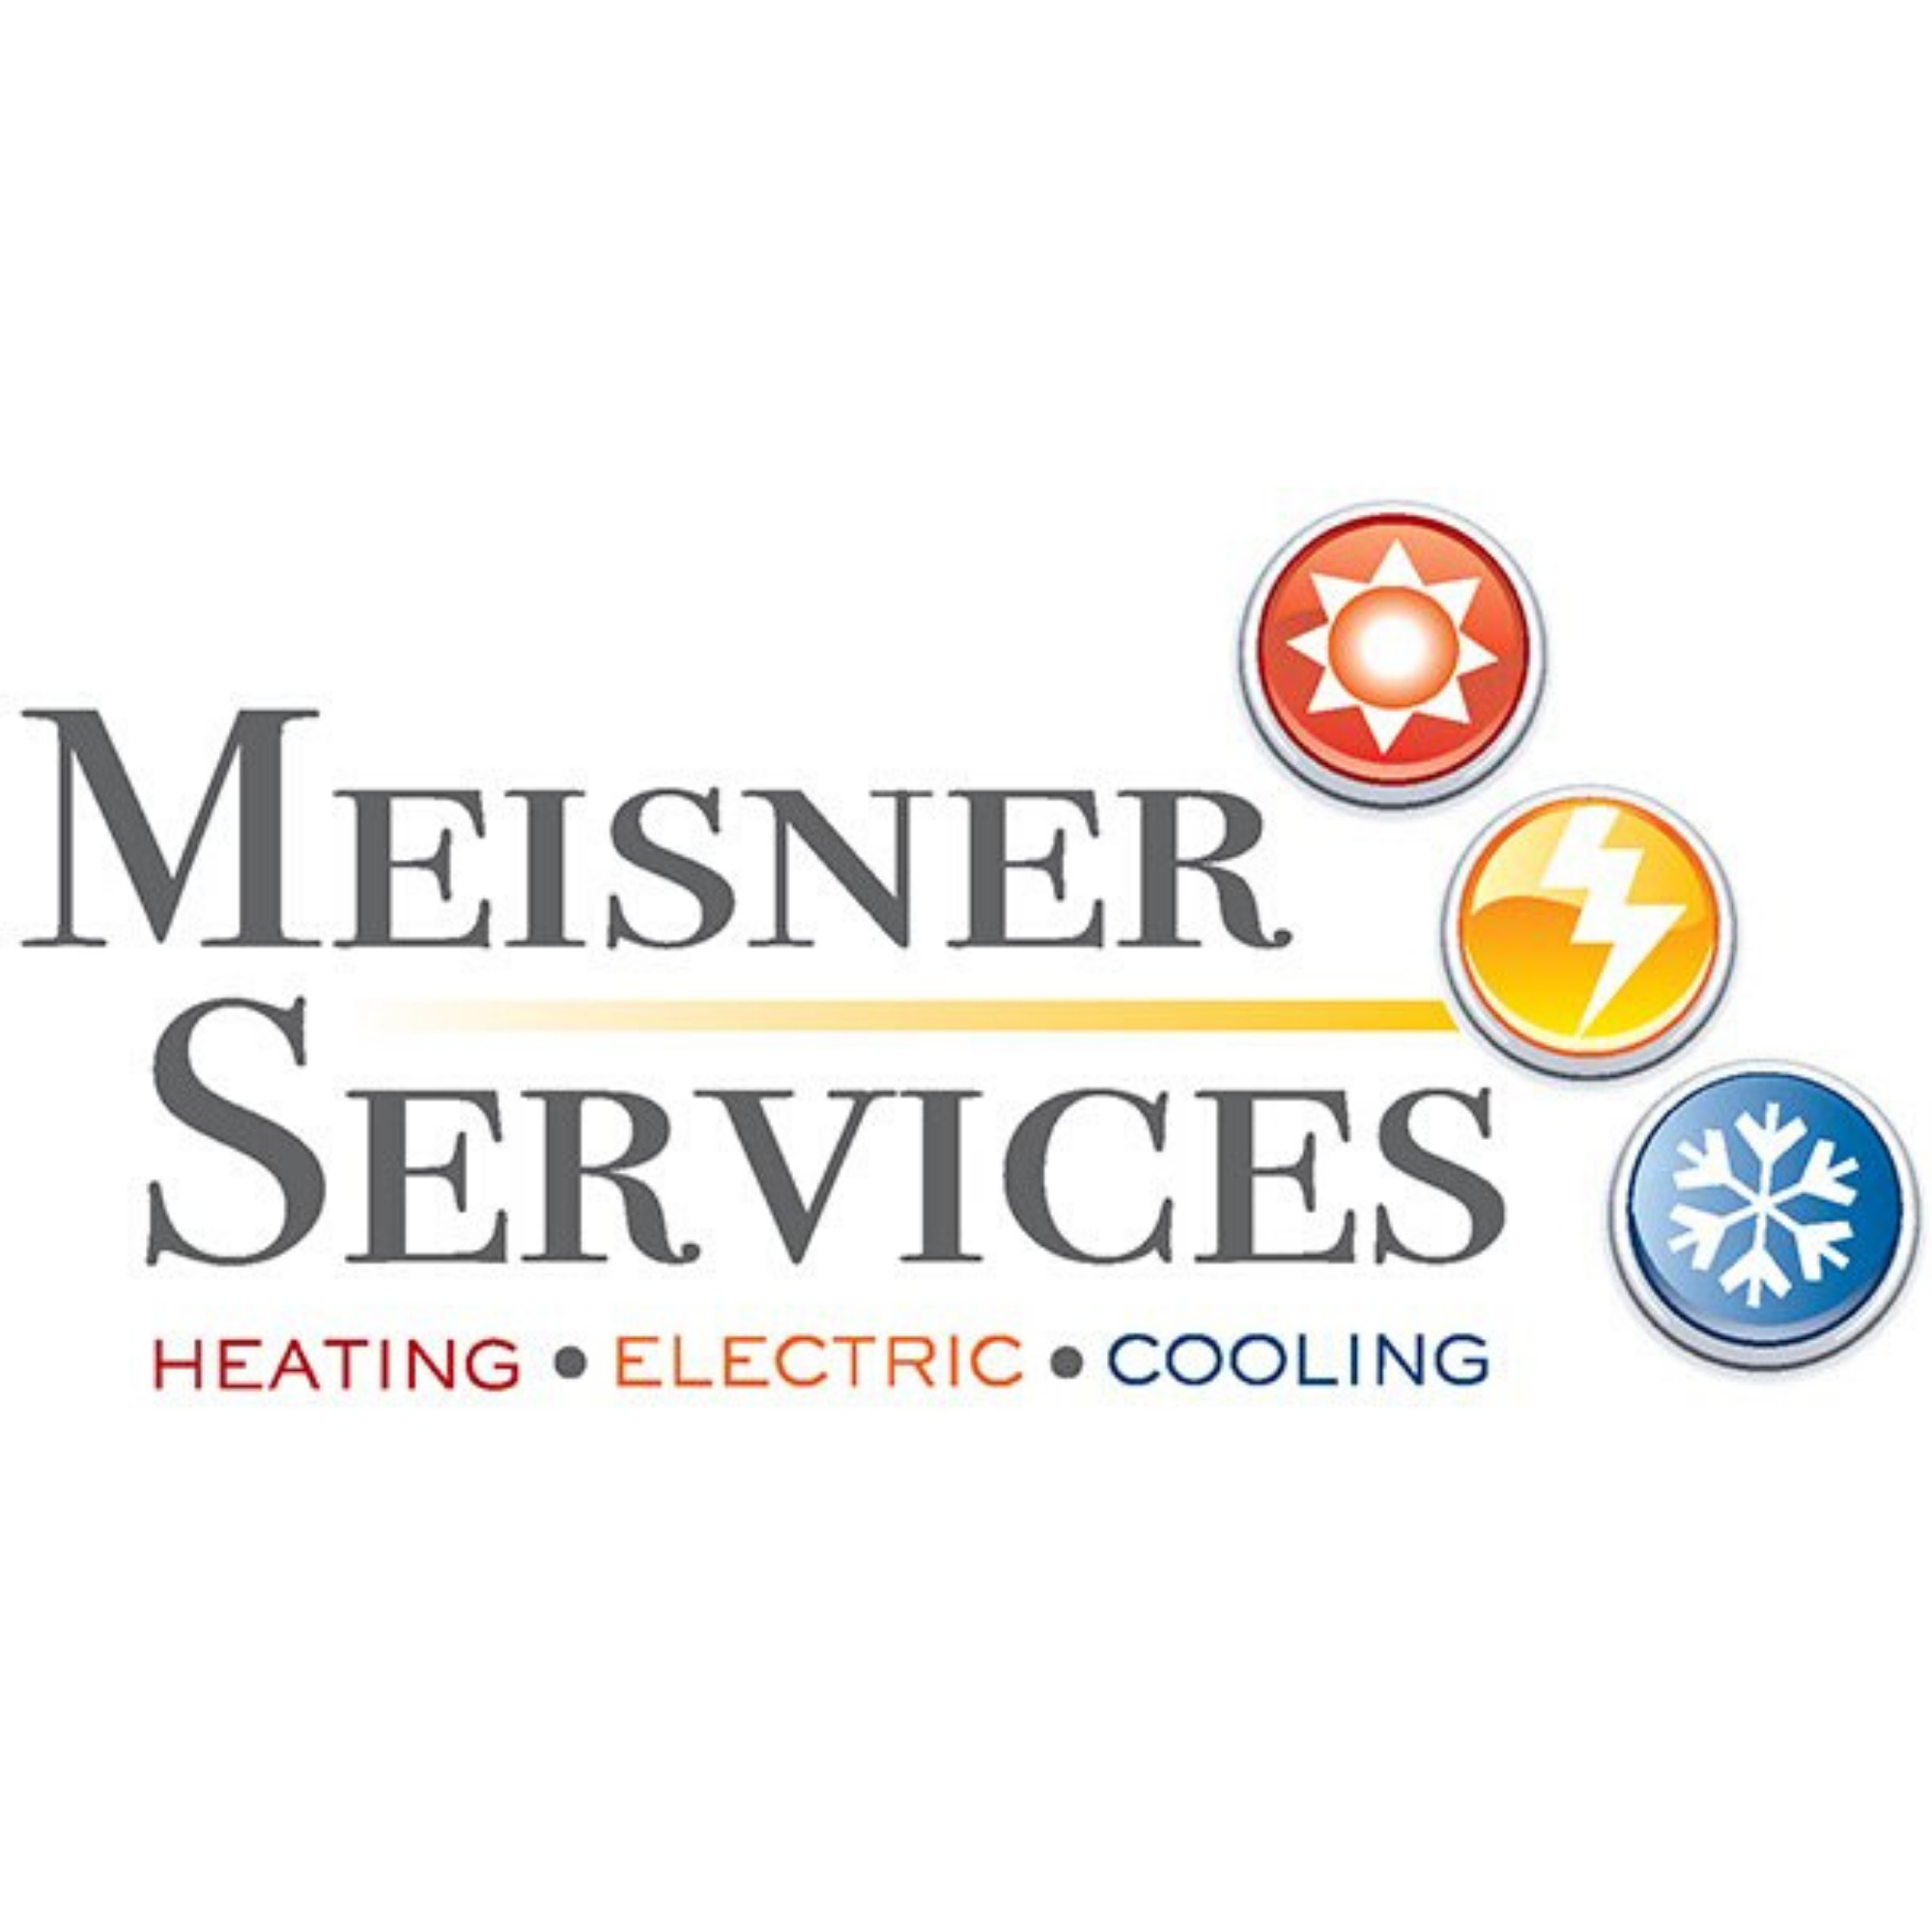 Meisner Services